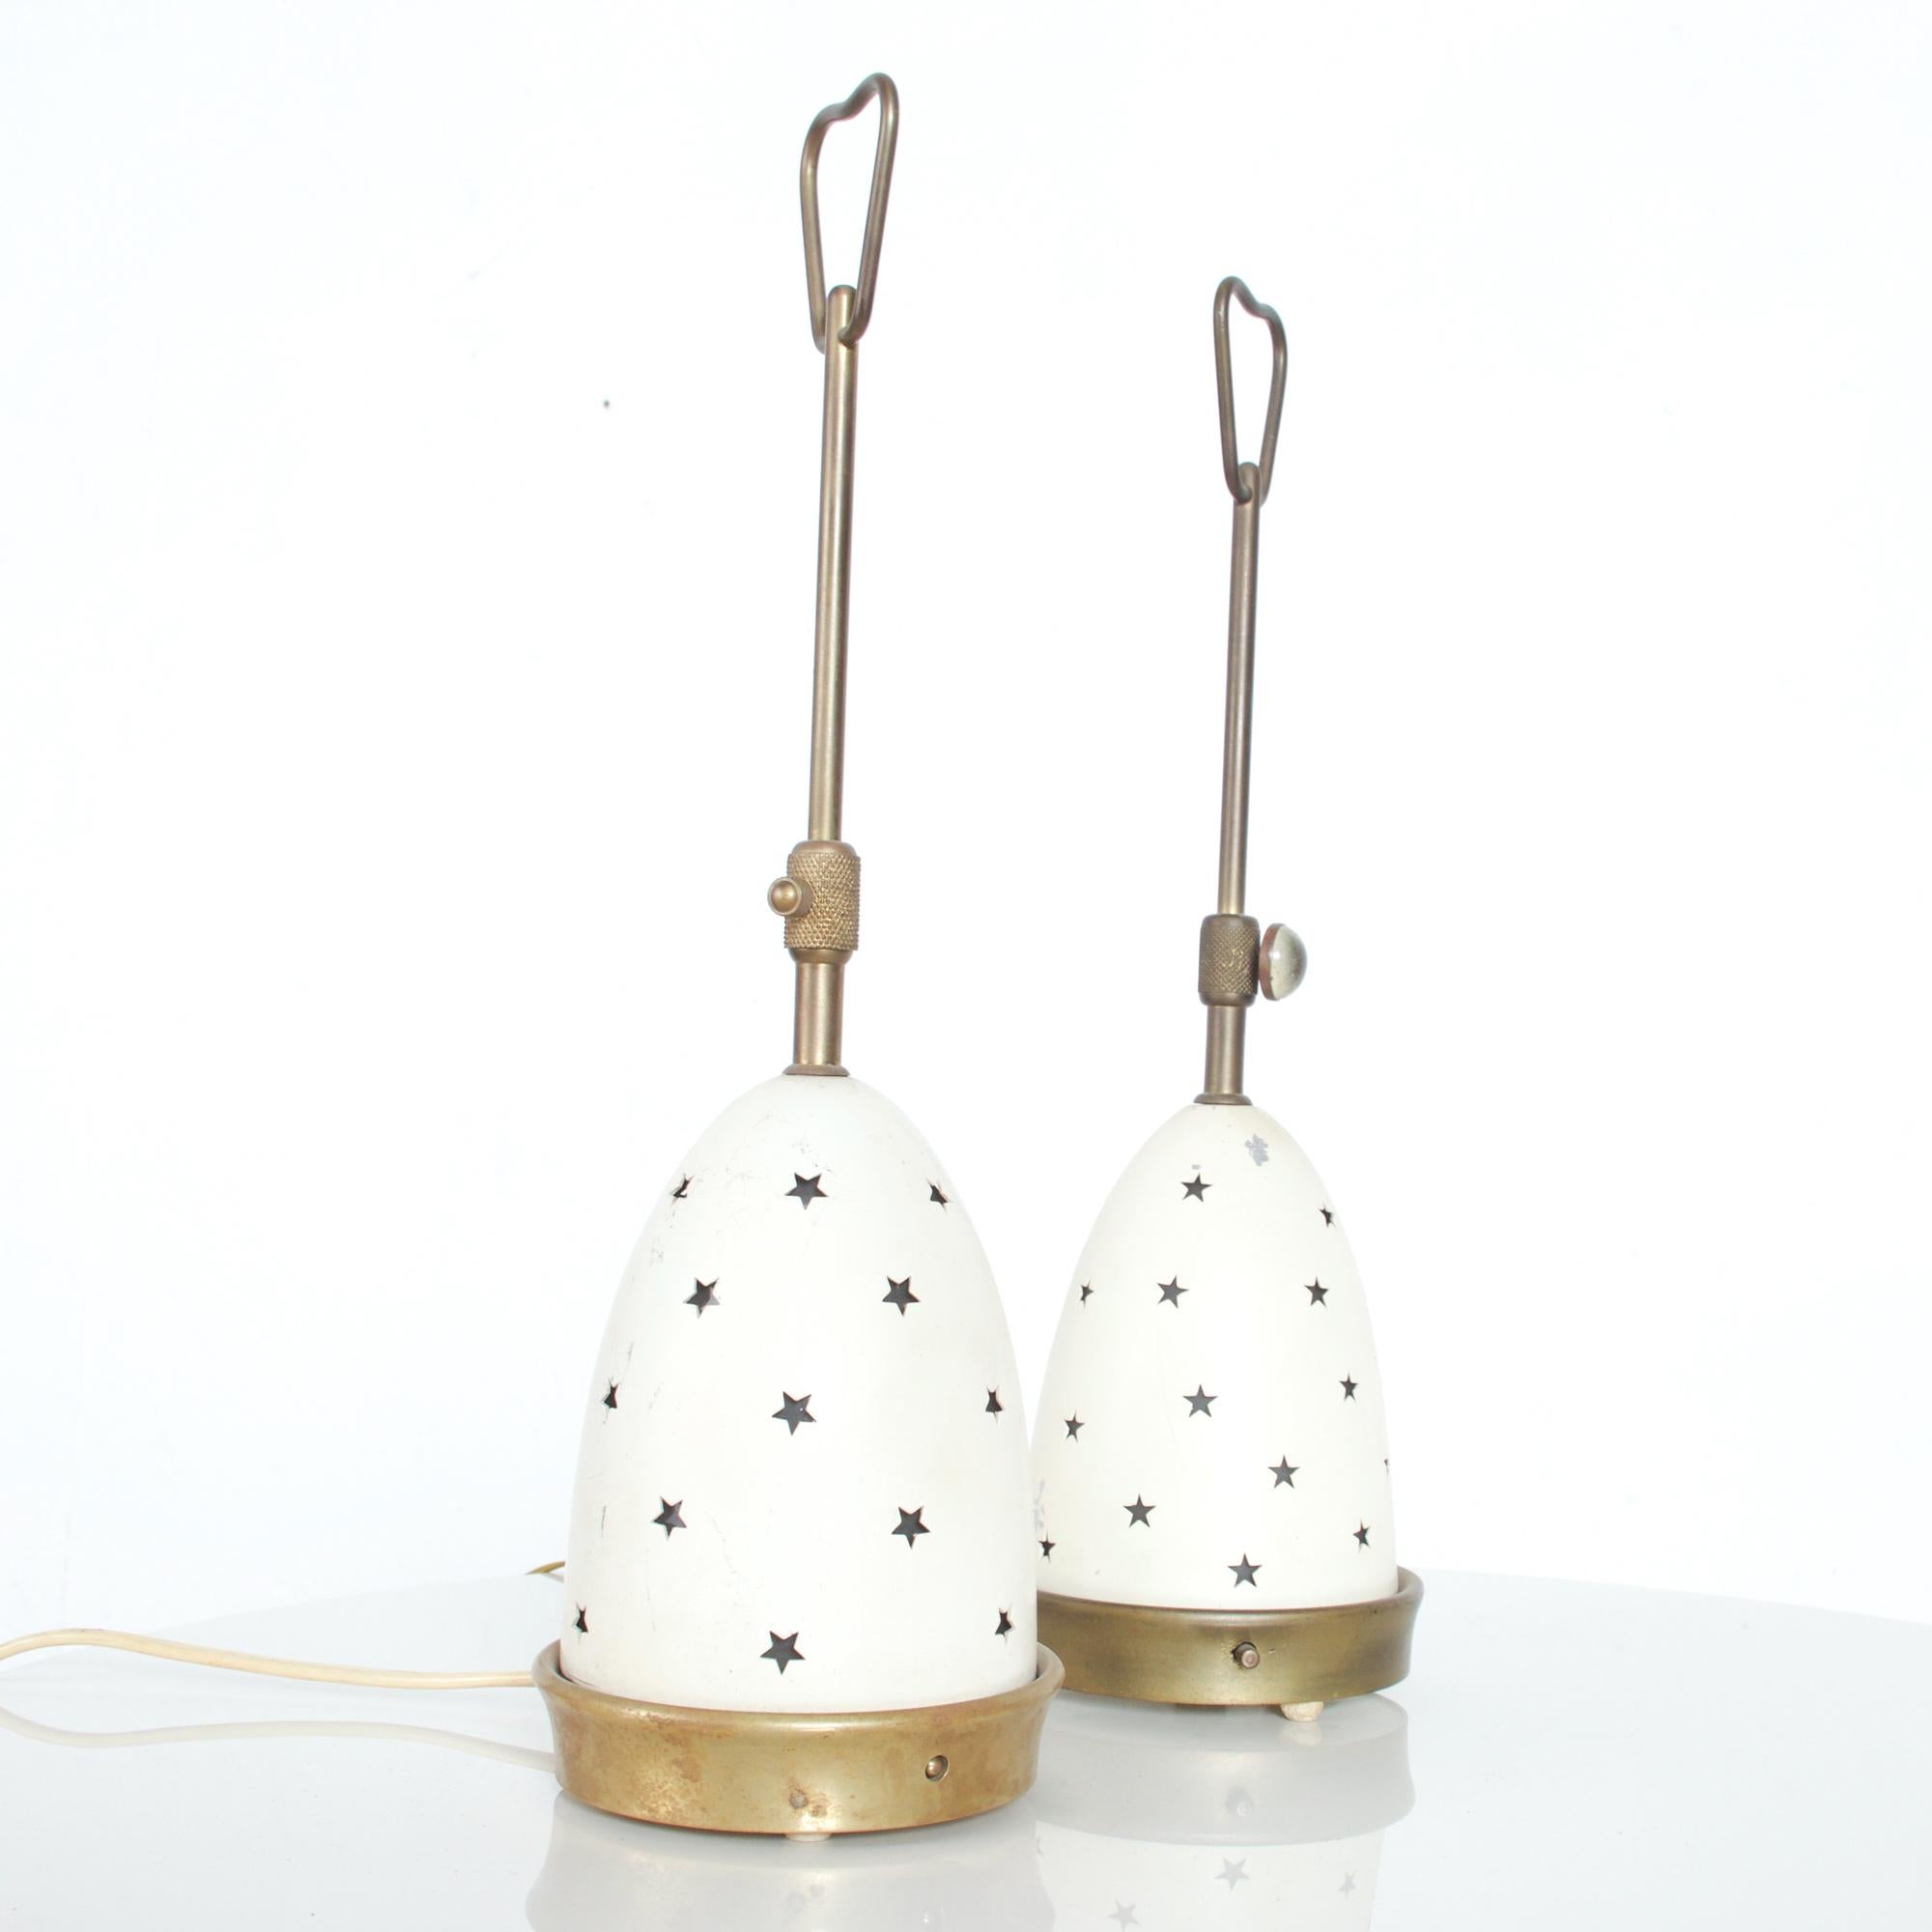 Hübsches Paar Tischlampen Stelline Accent Lamps Modell 12291 entworfen von Angelo Lelli für Arredoluce Italien 1950er Jahre.
Die Lampen haben eine Messingstruktur und einen doppelten Schirm aus mattiertem Opalglas und Metall. 
Der äußere Schirm ist